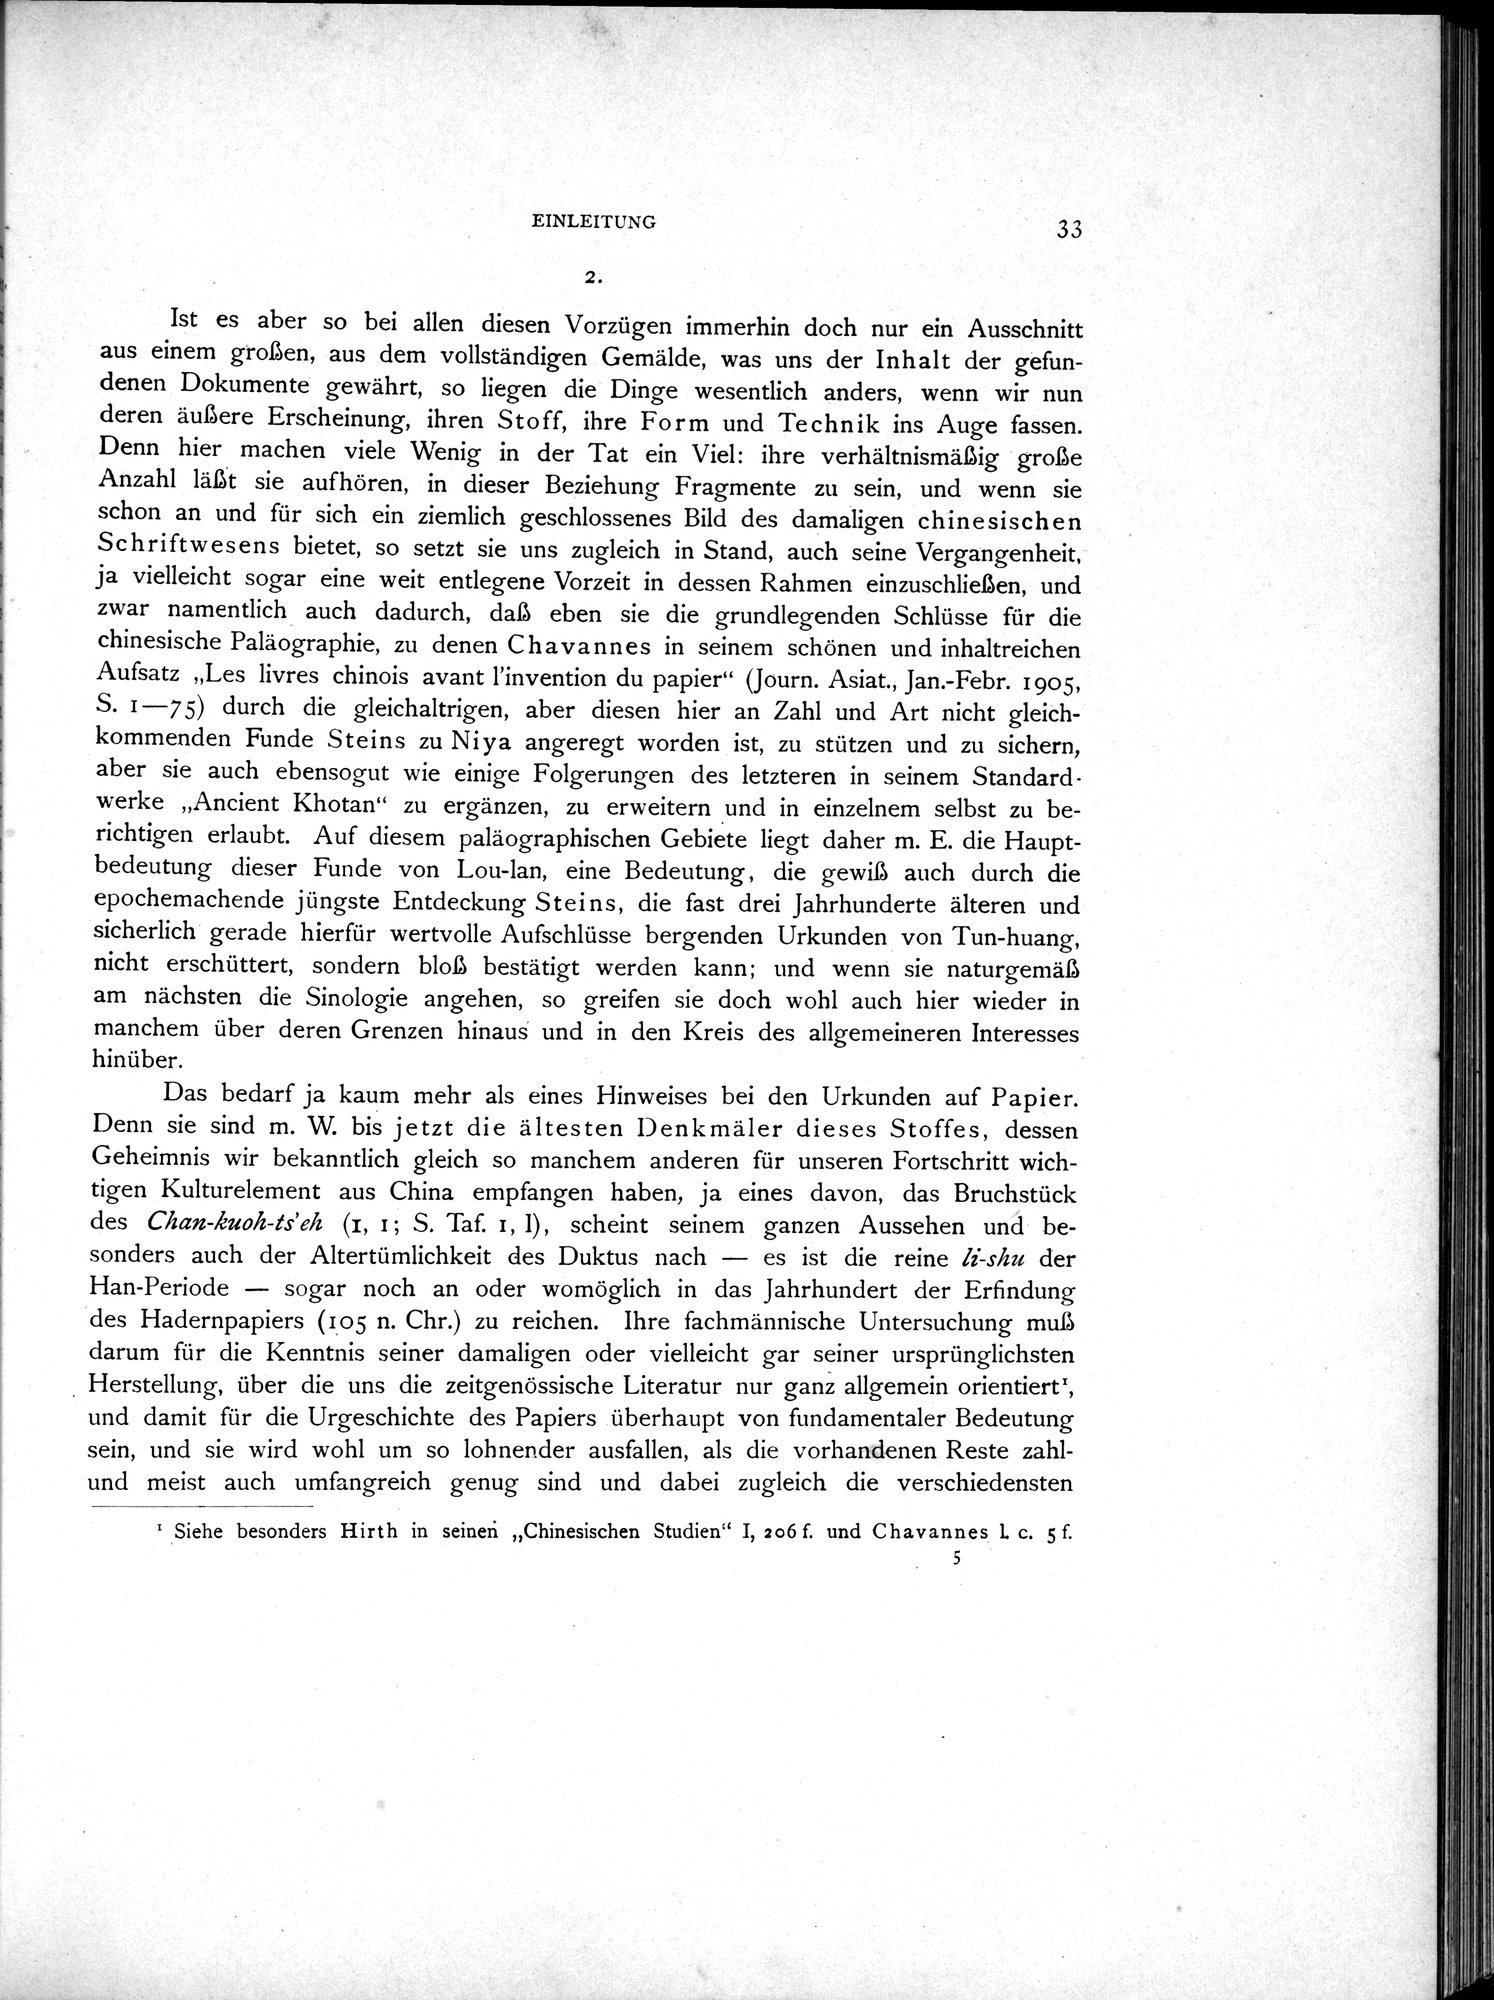 Die Chinesischen Handschriften- und sonstigen Kleinfunde Sven Hedins in Lou-lan : vol.1 / Page 57 (Grayscale High Resolution Image)